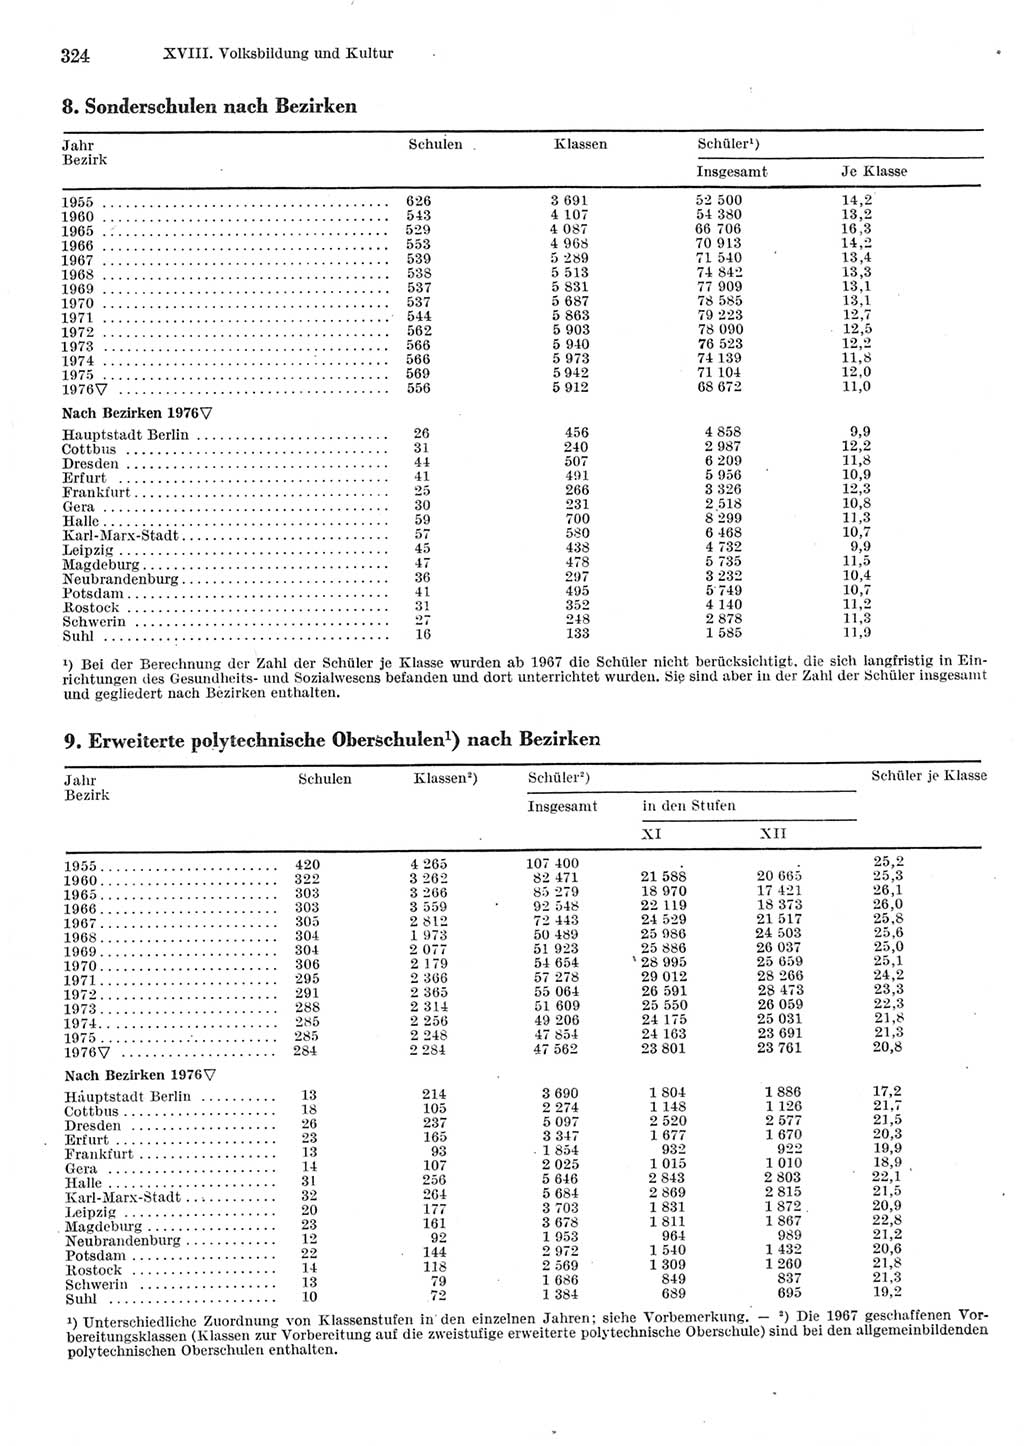 Statistisches Jahrbuch der Deutschen Demokratischen Republik (DDR) 1977, Seite 324 (Stat. Jb. DDR 1977, S. 324)